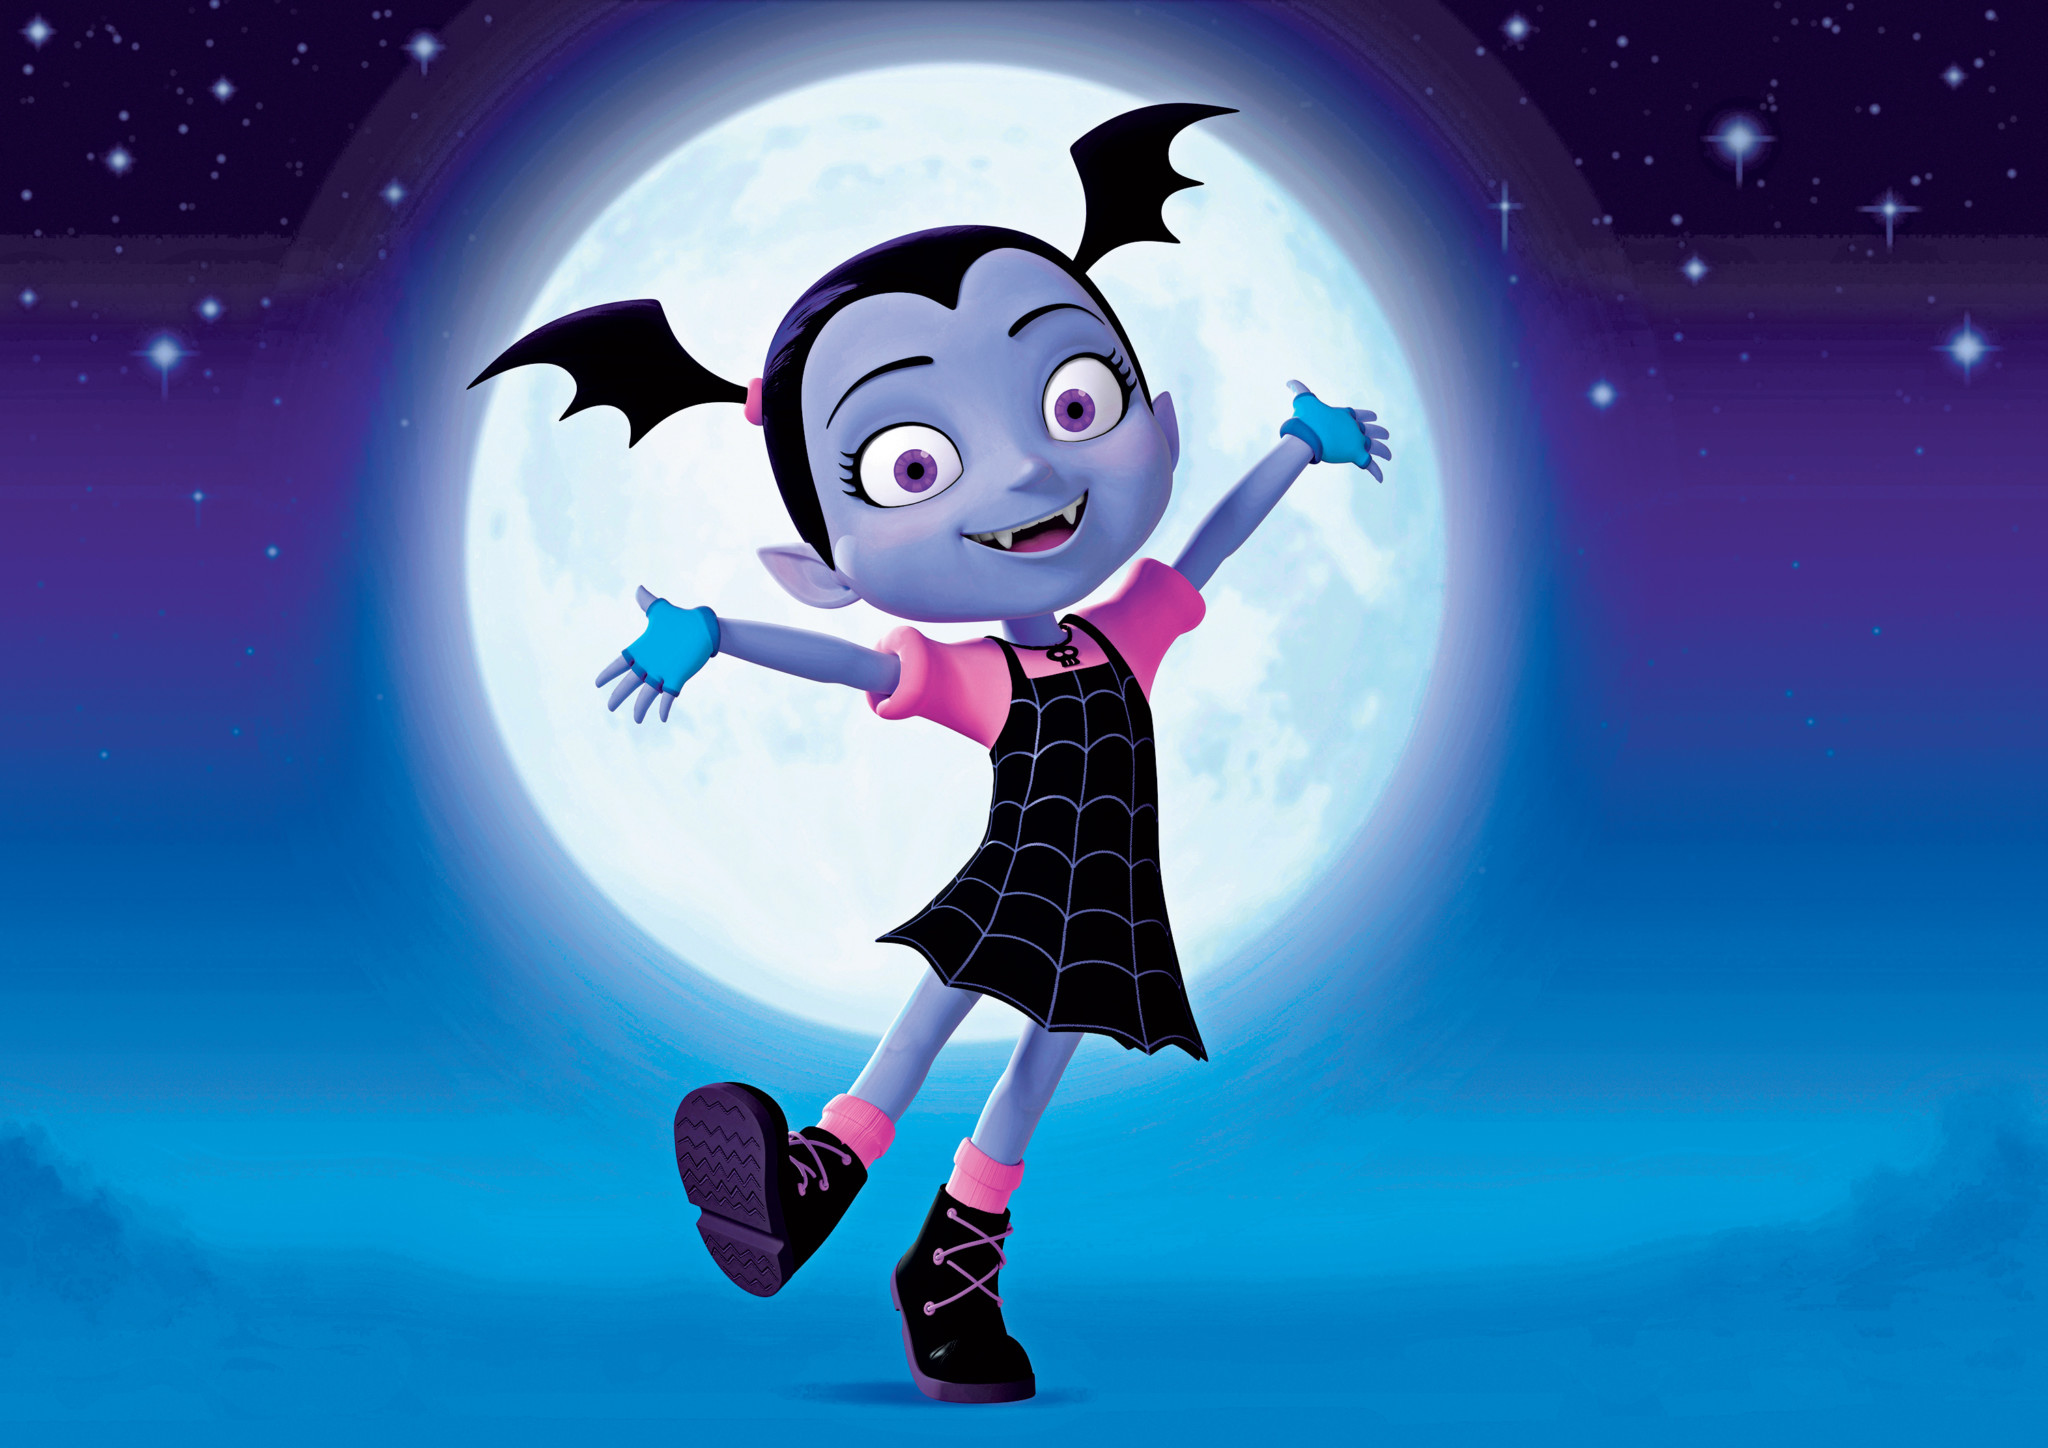 Meet 'Vampirina', the Newest Addition to Disney Junior's Kiddie Line-Up